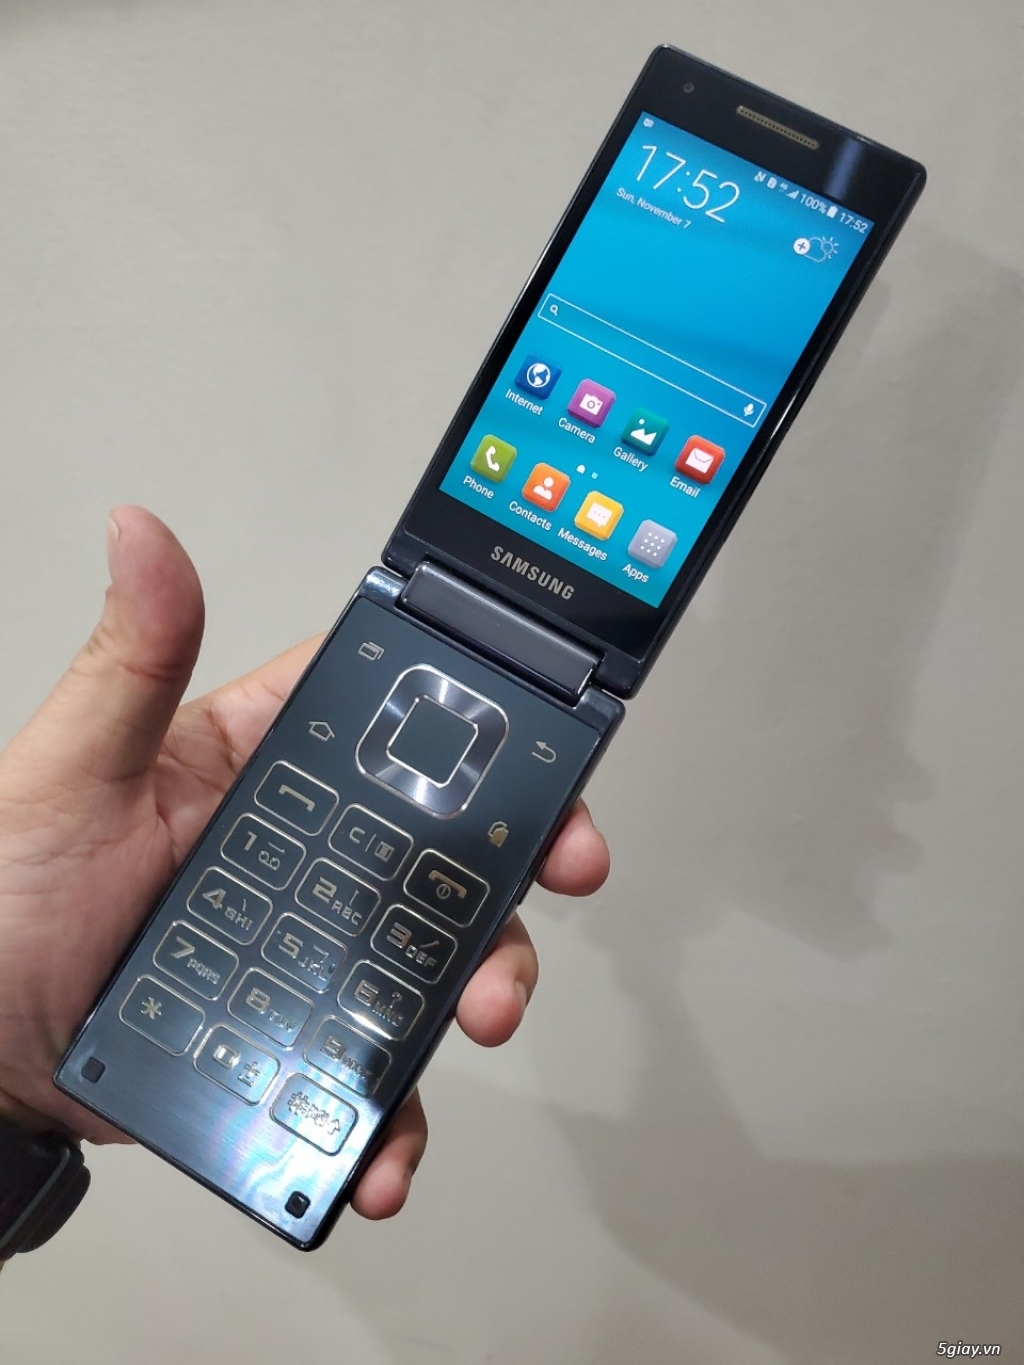 Hàng độc: Samsung G9198 nắp gập 2 màn hình đời cuối màu xanh siêu đẹp - 6